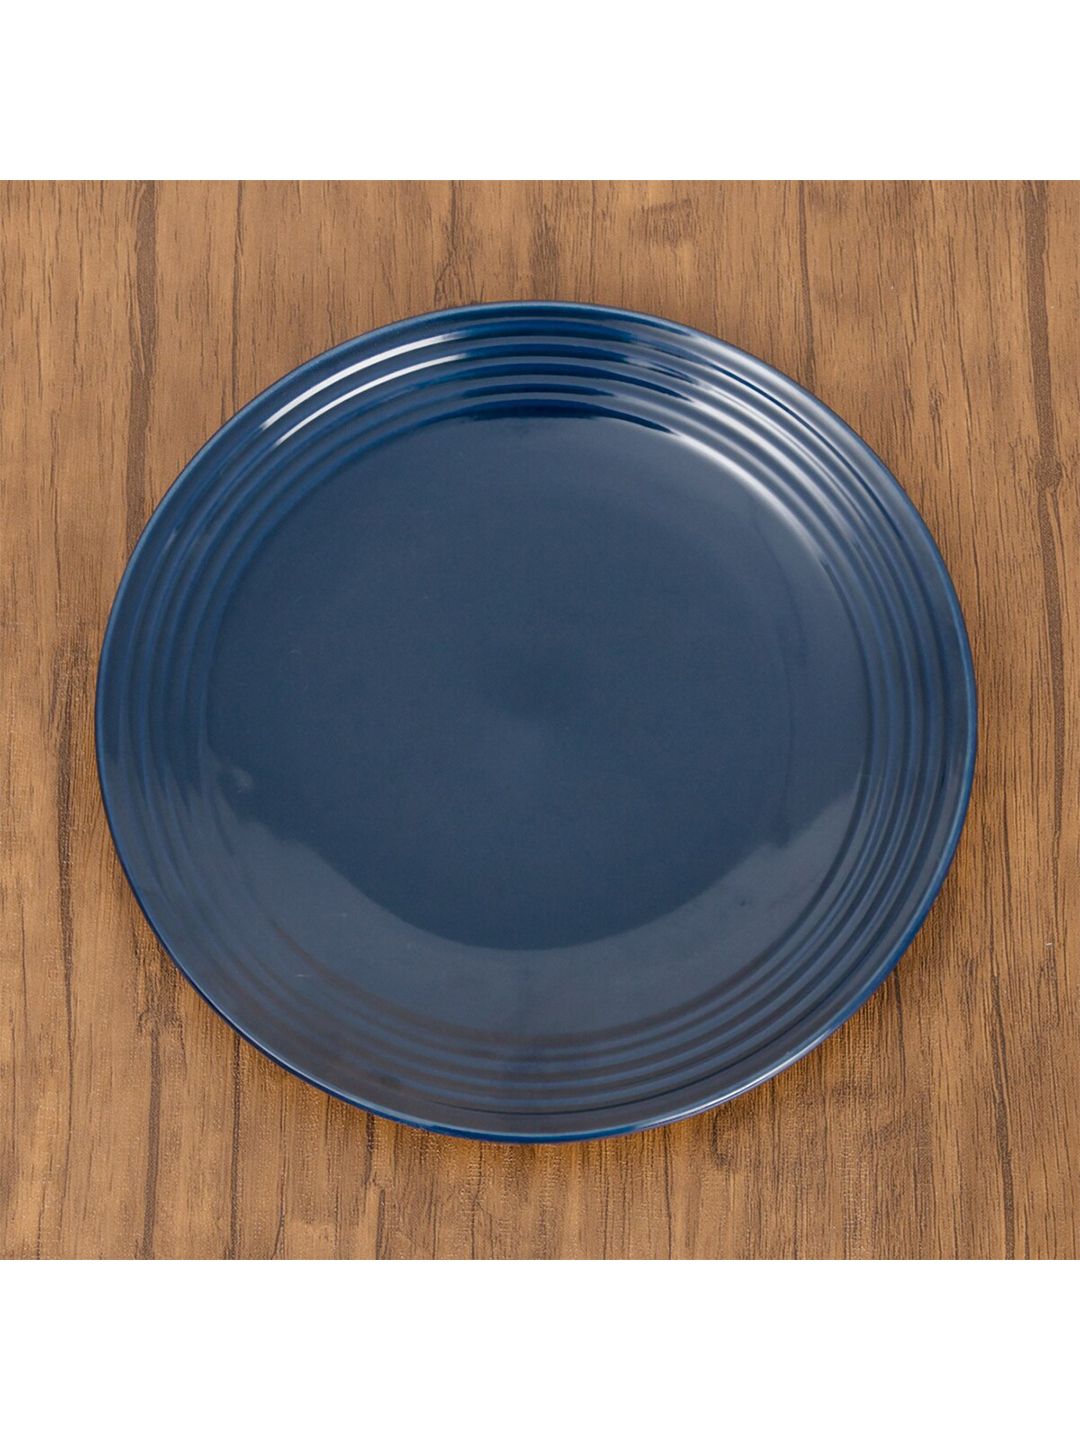 Home Centre Blue Stoneware Matte Plate Price in India